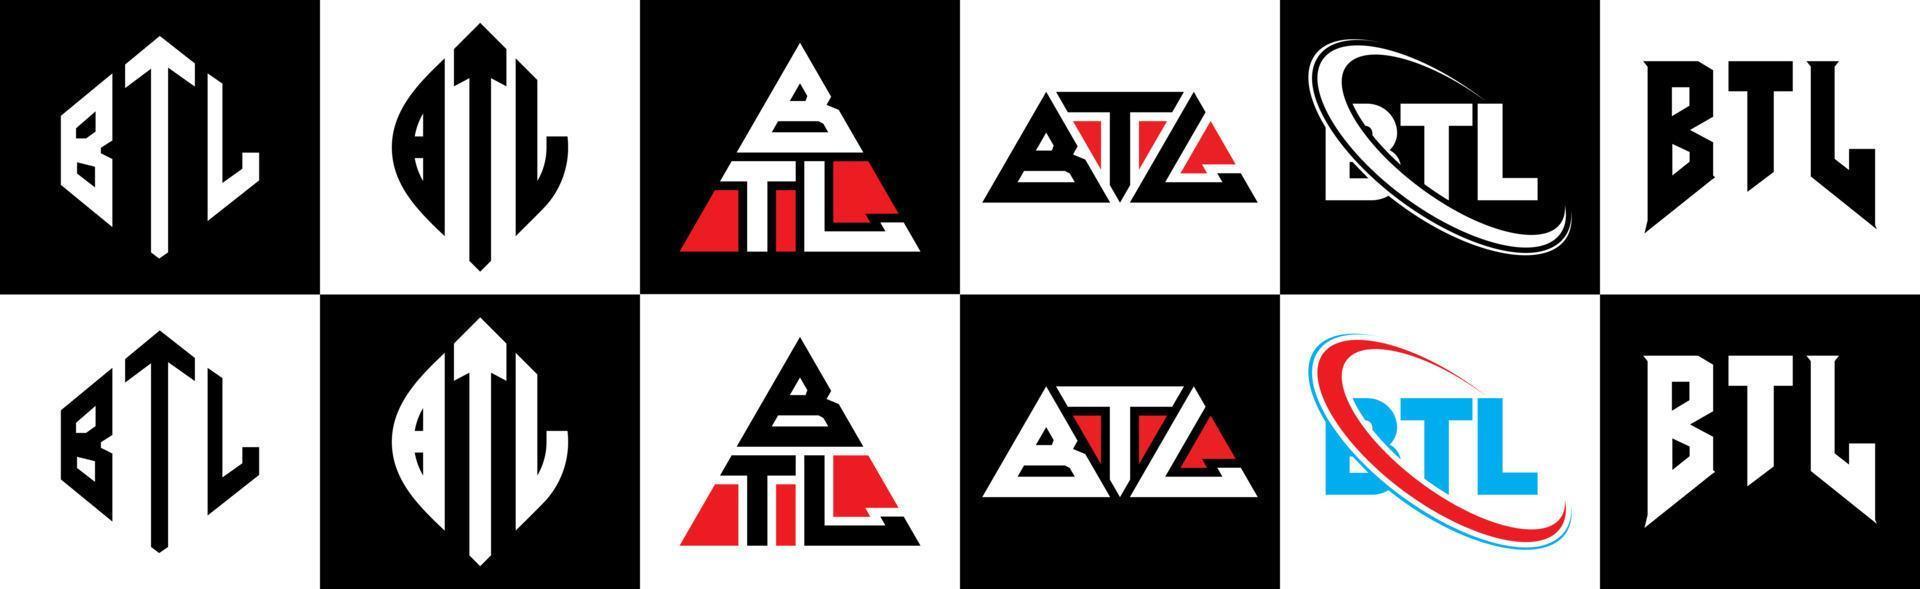 btl-Buchstaben-Logo-Design in sechs Stilen. btl polygon, kreis, dreieck, hexagon, flacher und einfacher stil mit schwarz-weißem buchstabenlogo in einer zeichenfläche. btl minimalistisches und klassisches logo vektor